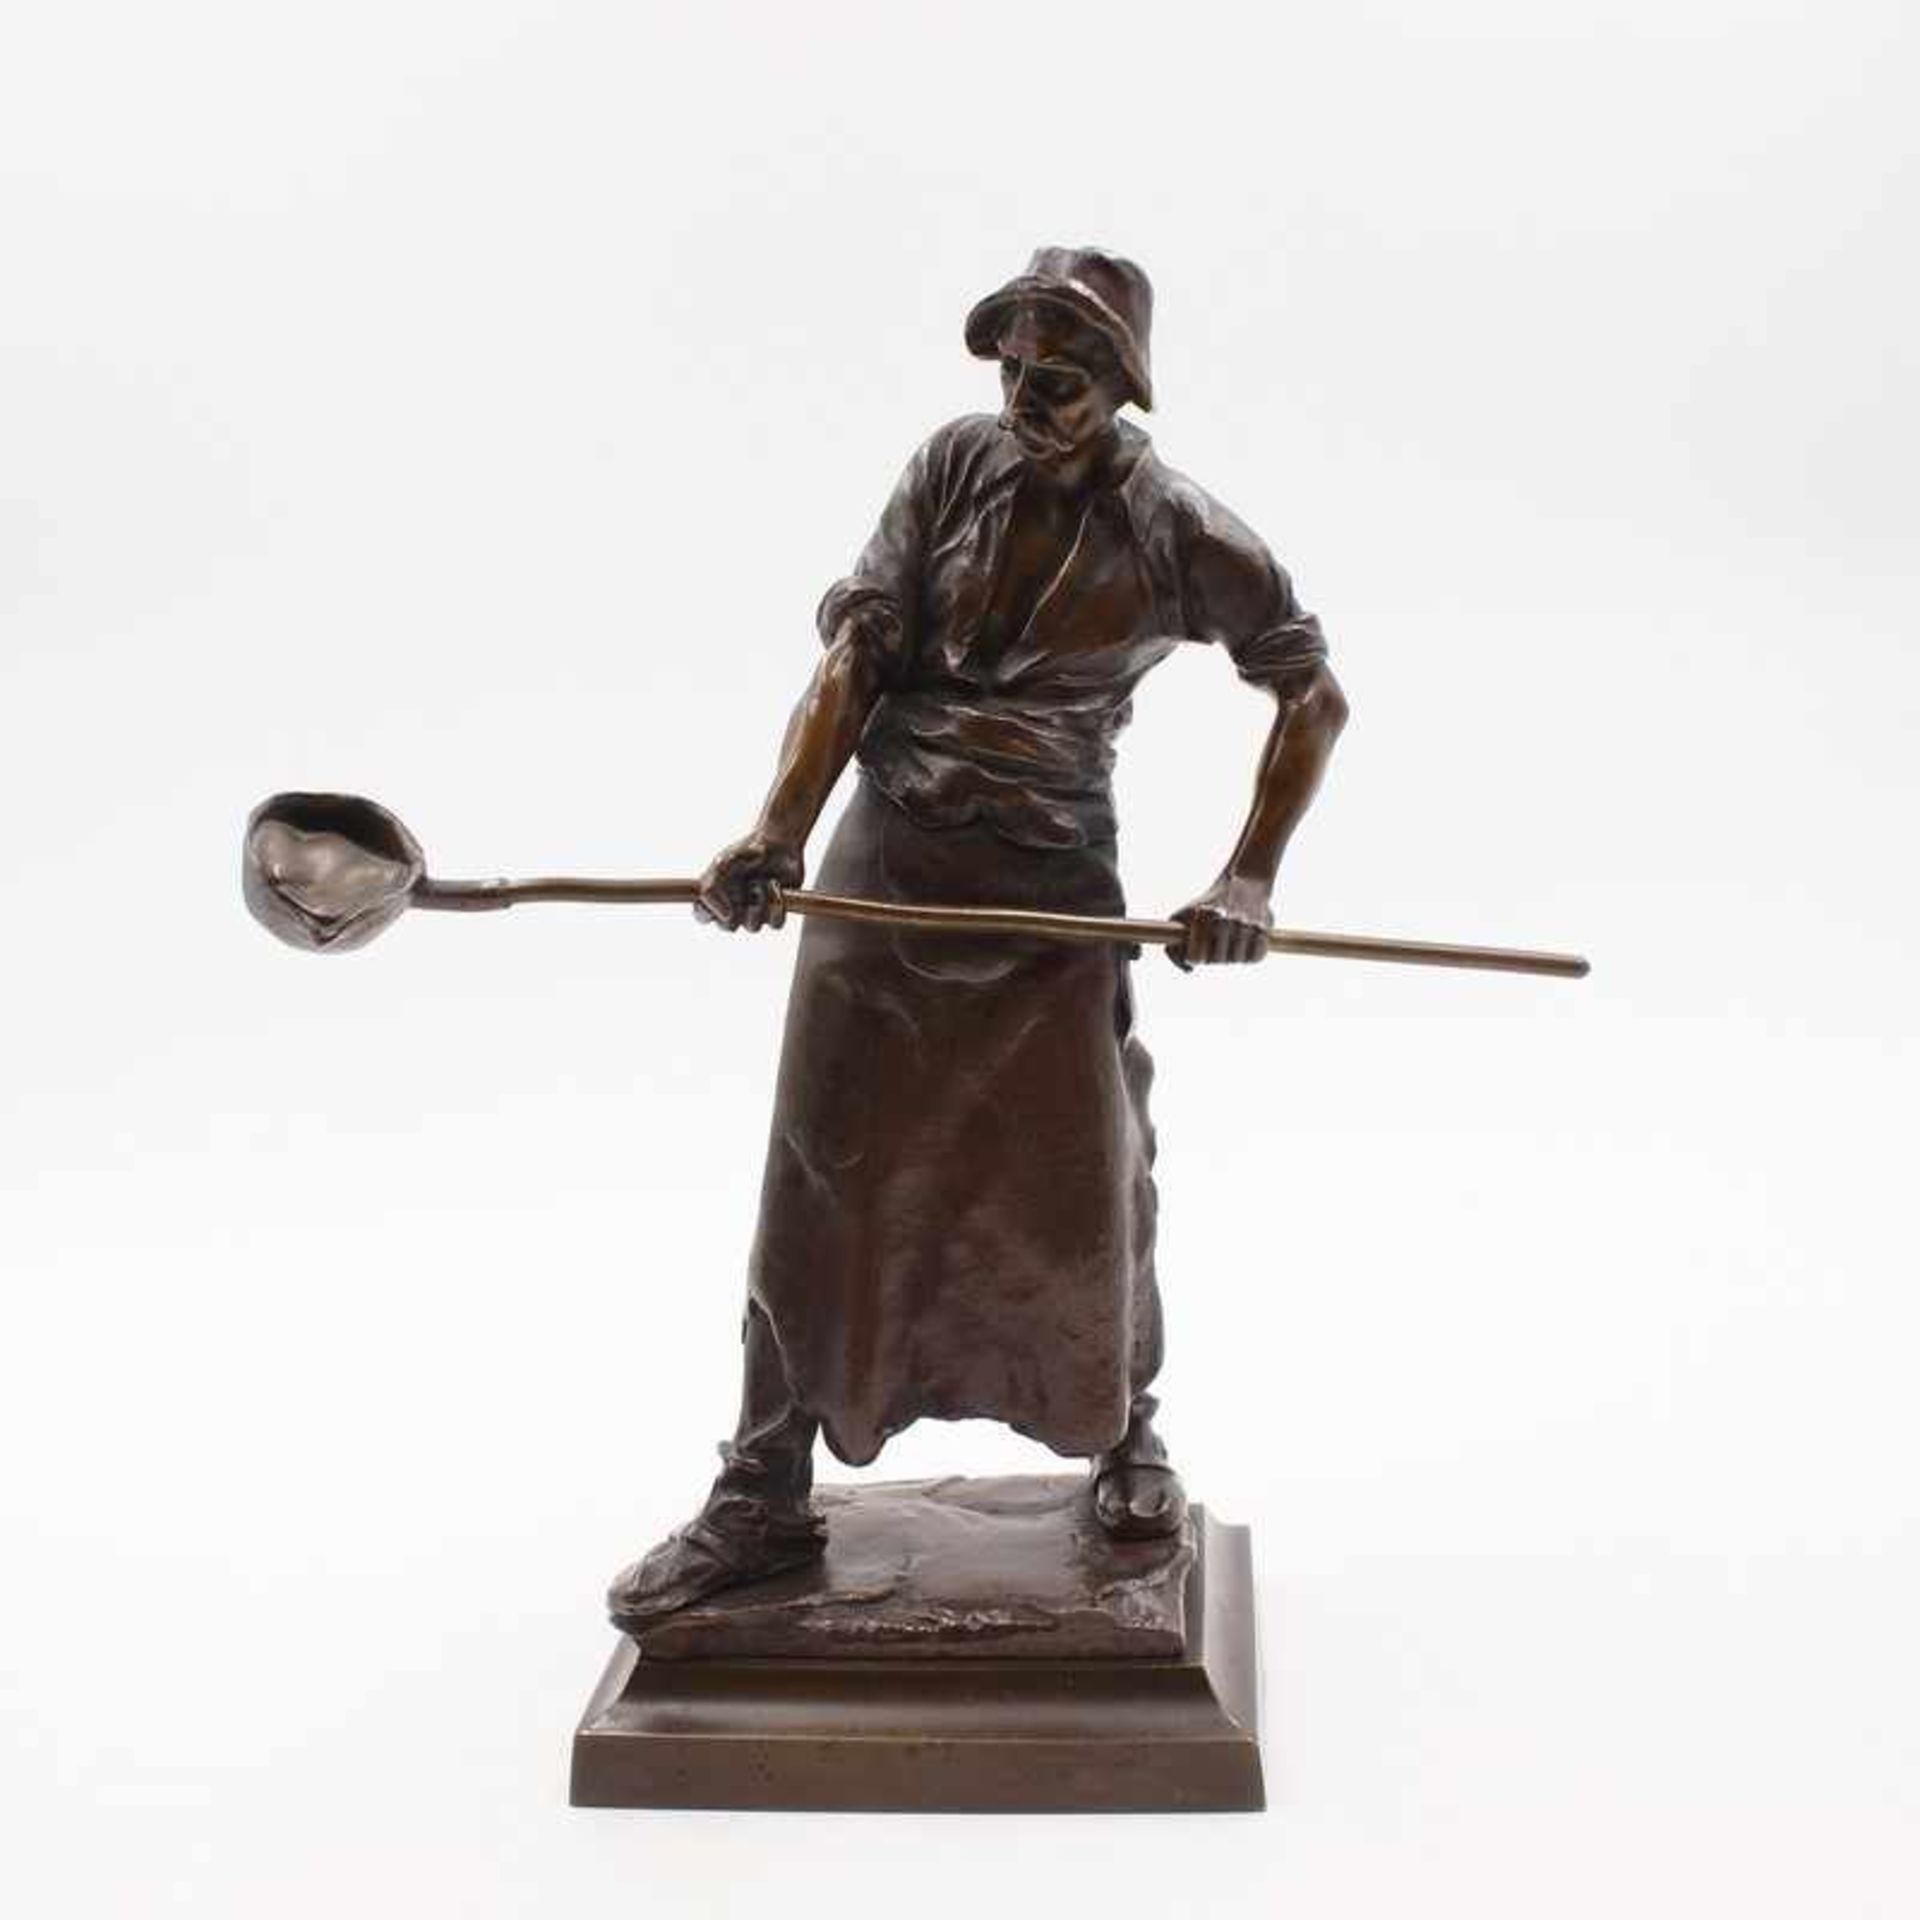 Höland, Constantin tätig 1890 - 1920, dt. Bildhauer, Bronze, patiniert, vollplastische Figur eines